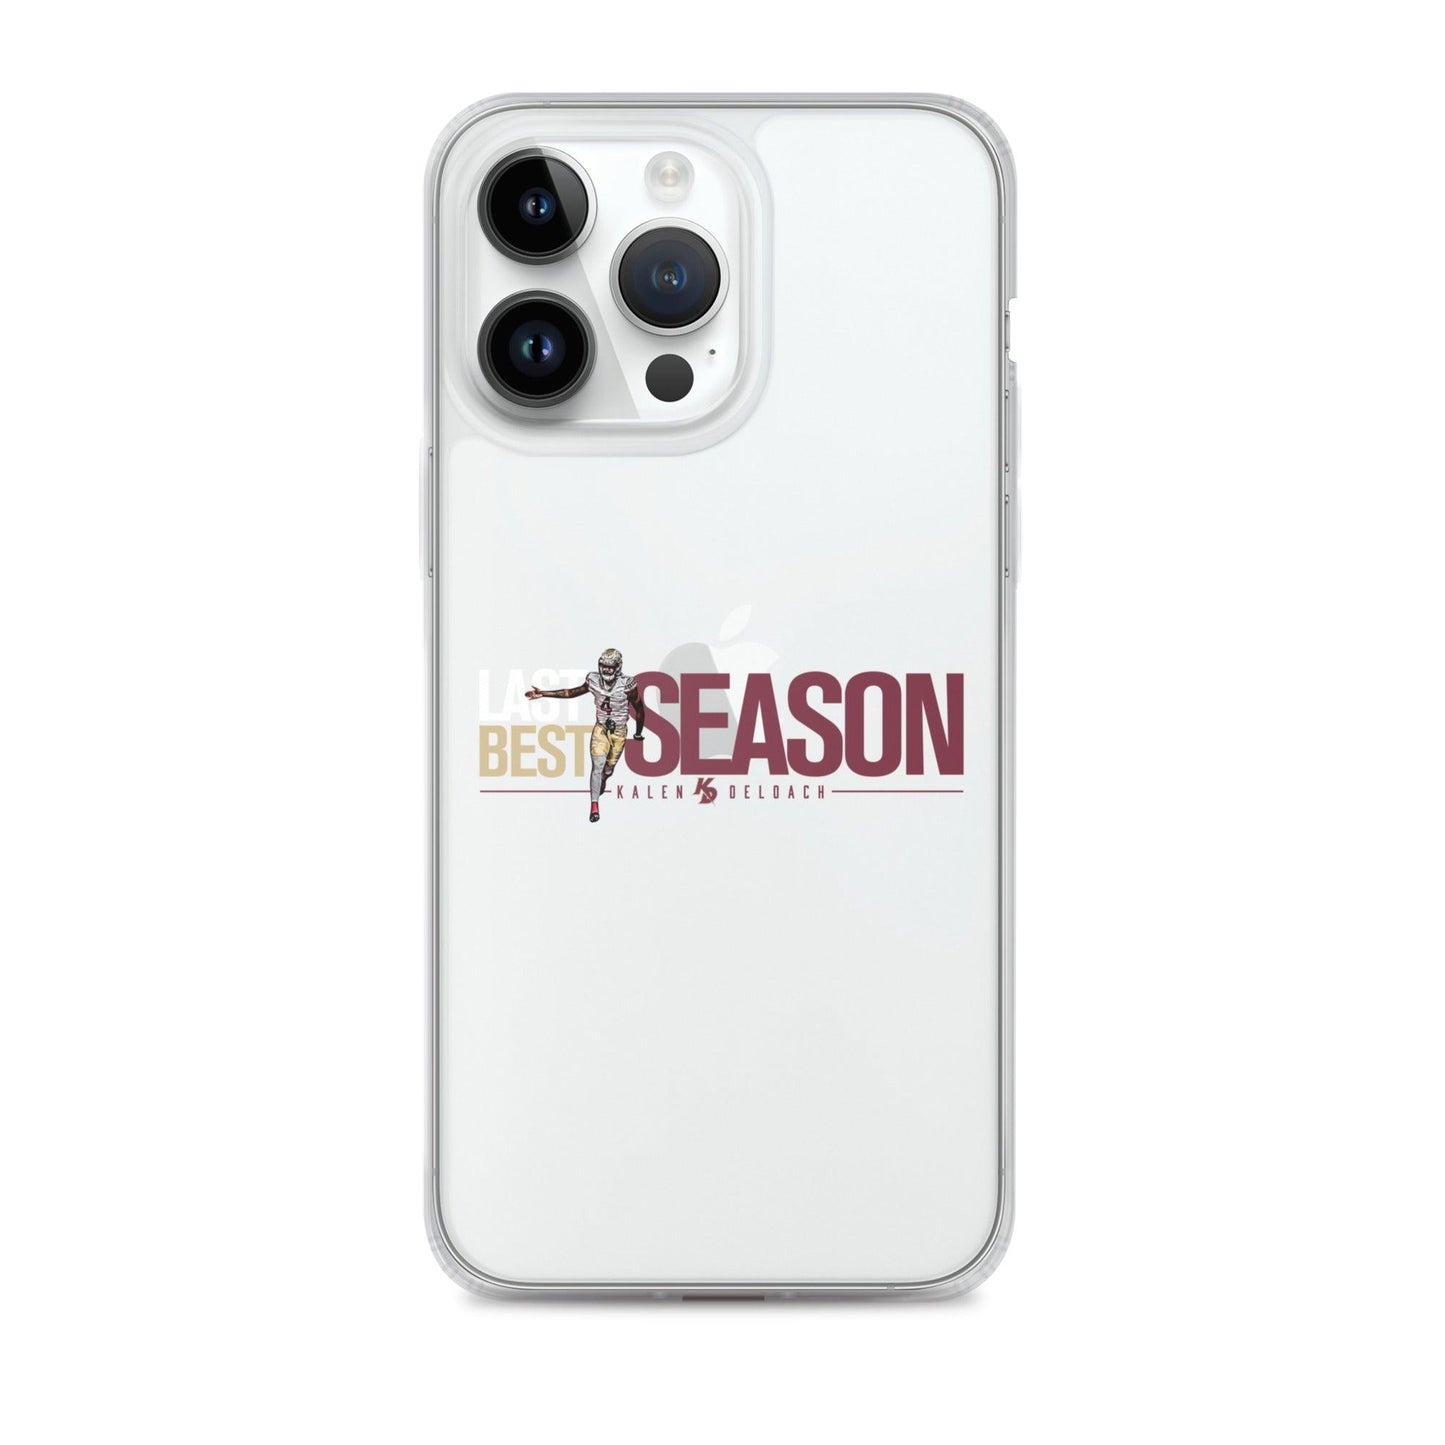 Kalen Deloach "Last Season Best Season" iPhone® - Fan Arch